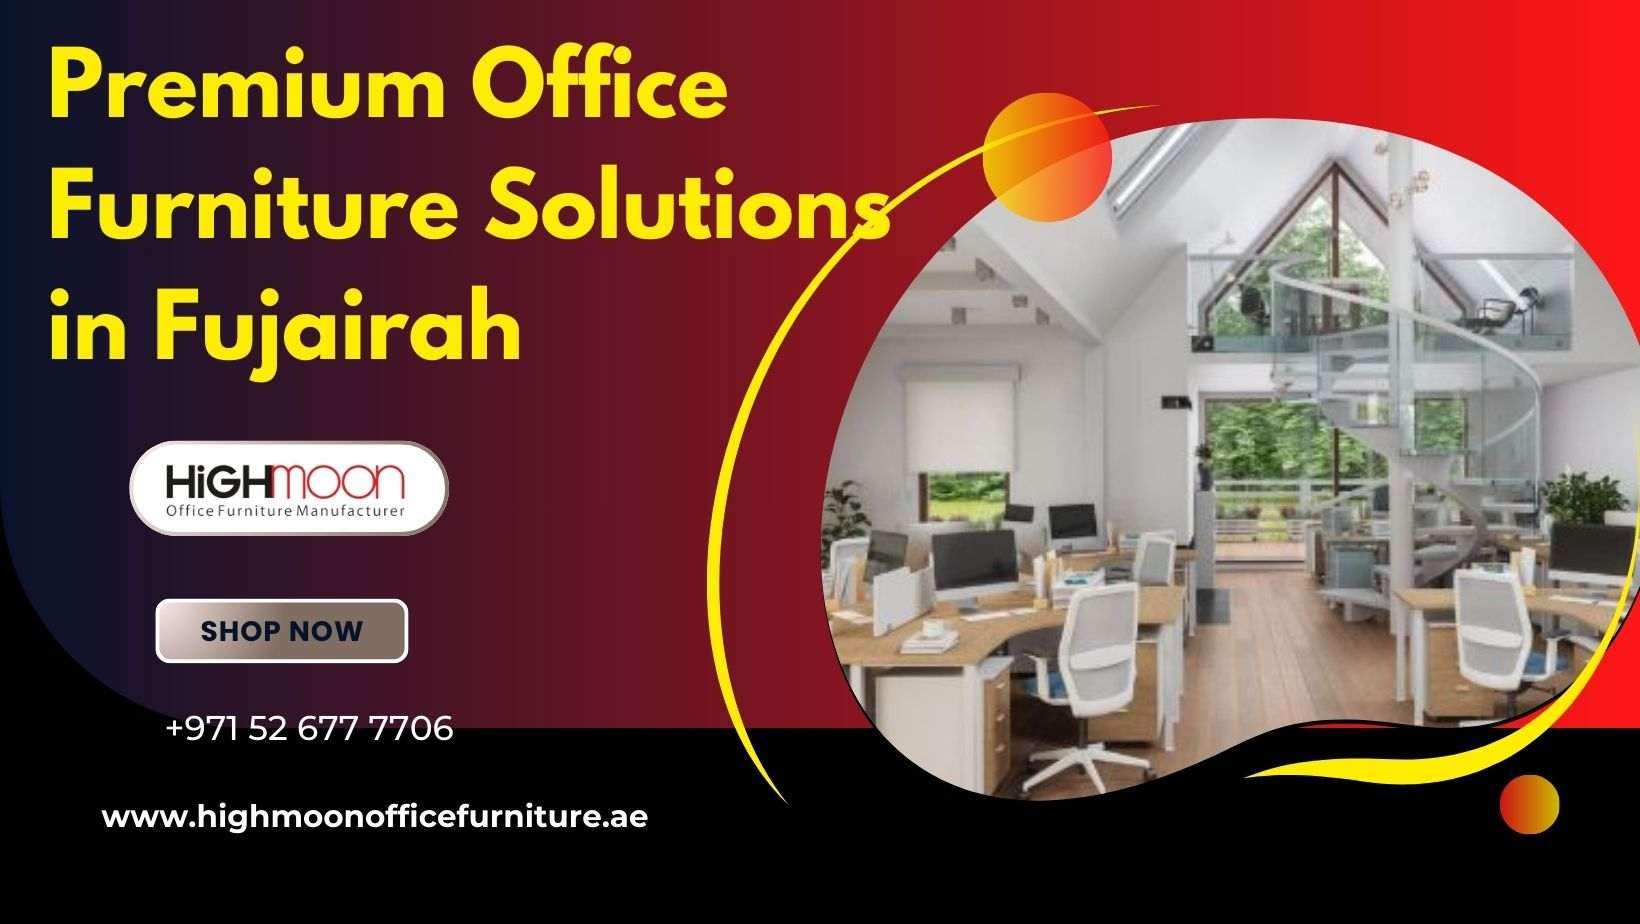 Premium Office Furniture Solutions in Fujairah